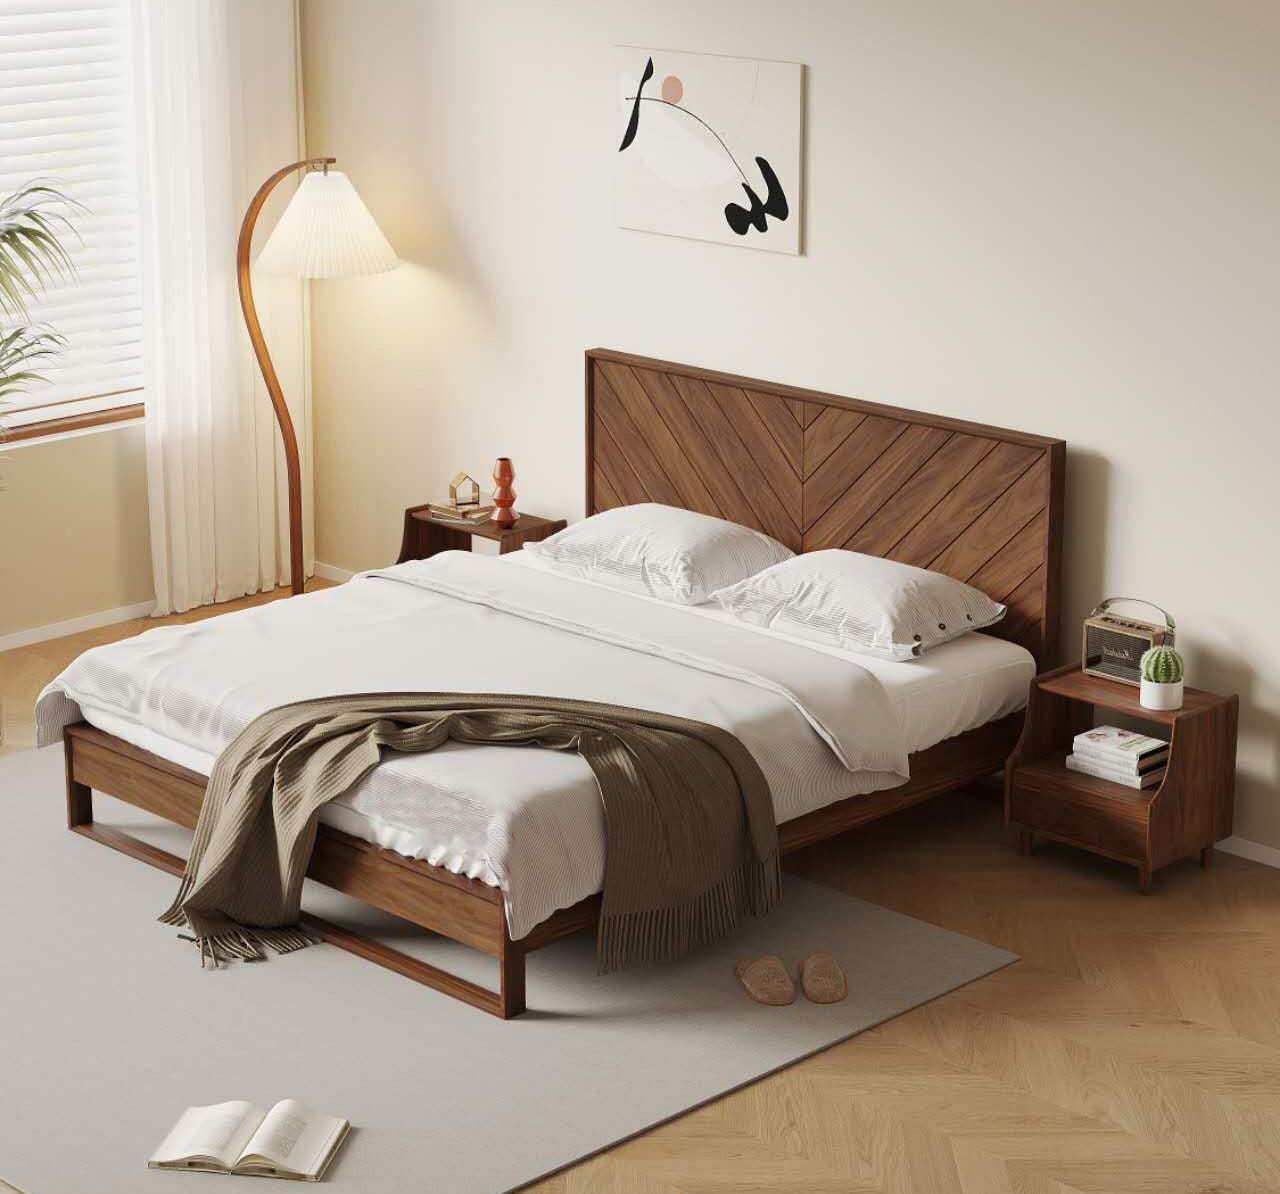 هيكل سرير من خشب الجوز الصلب، وسرير بمنصة من خشب الجوز